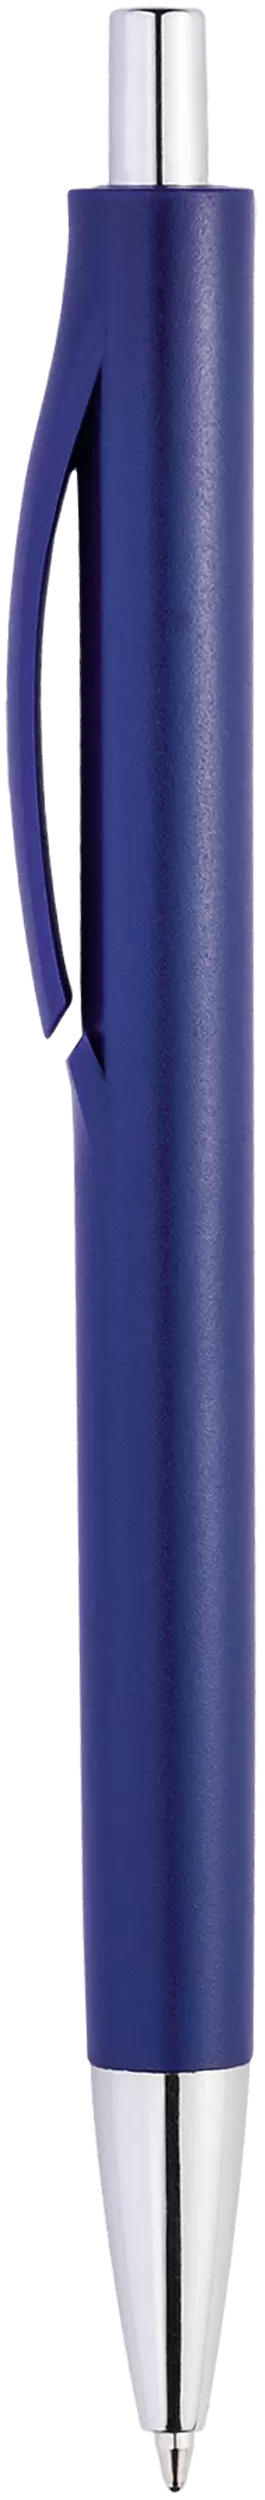 Ручка IGLA CHROME Темно-синяя 1032.14